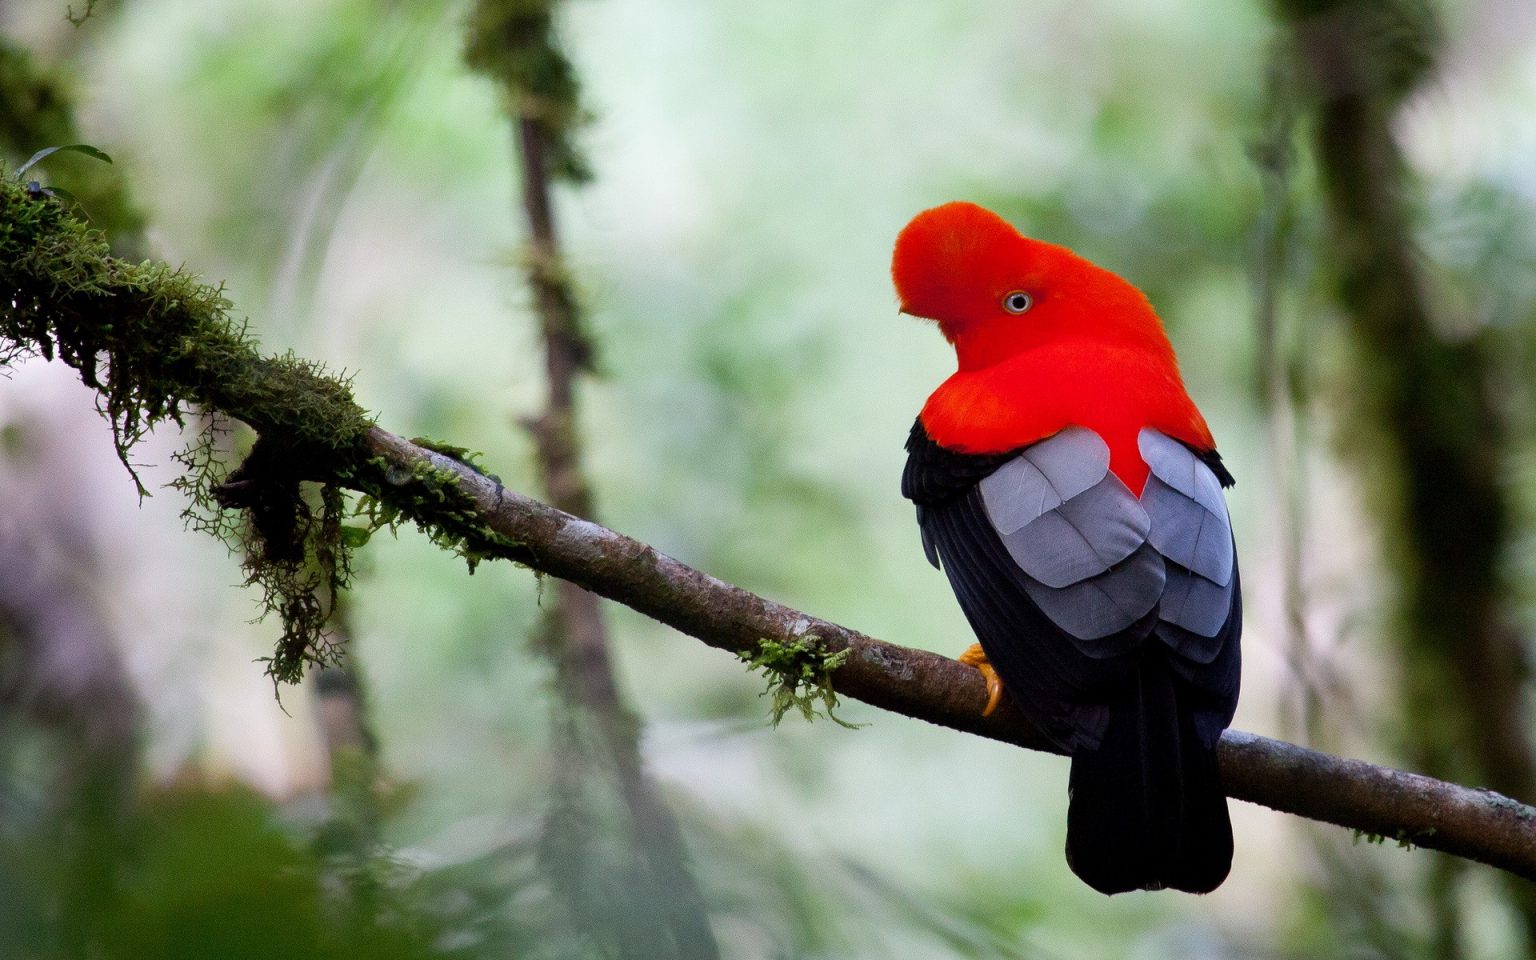 Tổng hợp hình ảnh chim Vẹt đẹp nhất - [Kích thước hình ảnh: 1536x960 px]